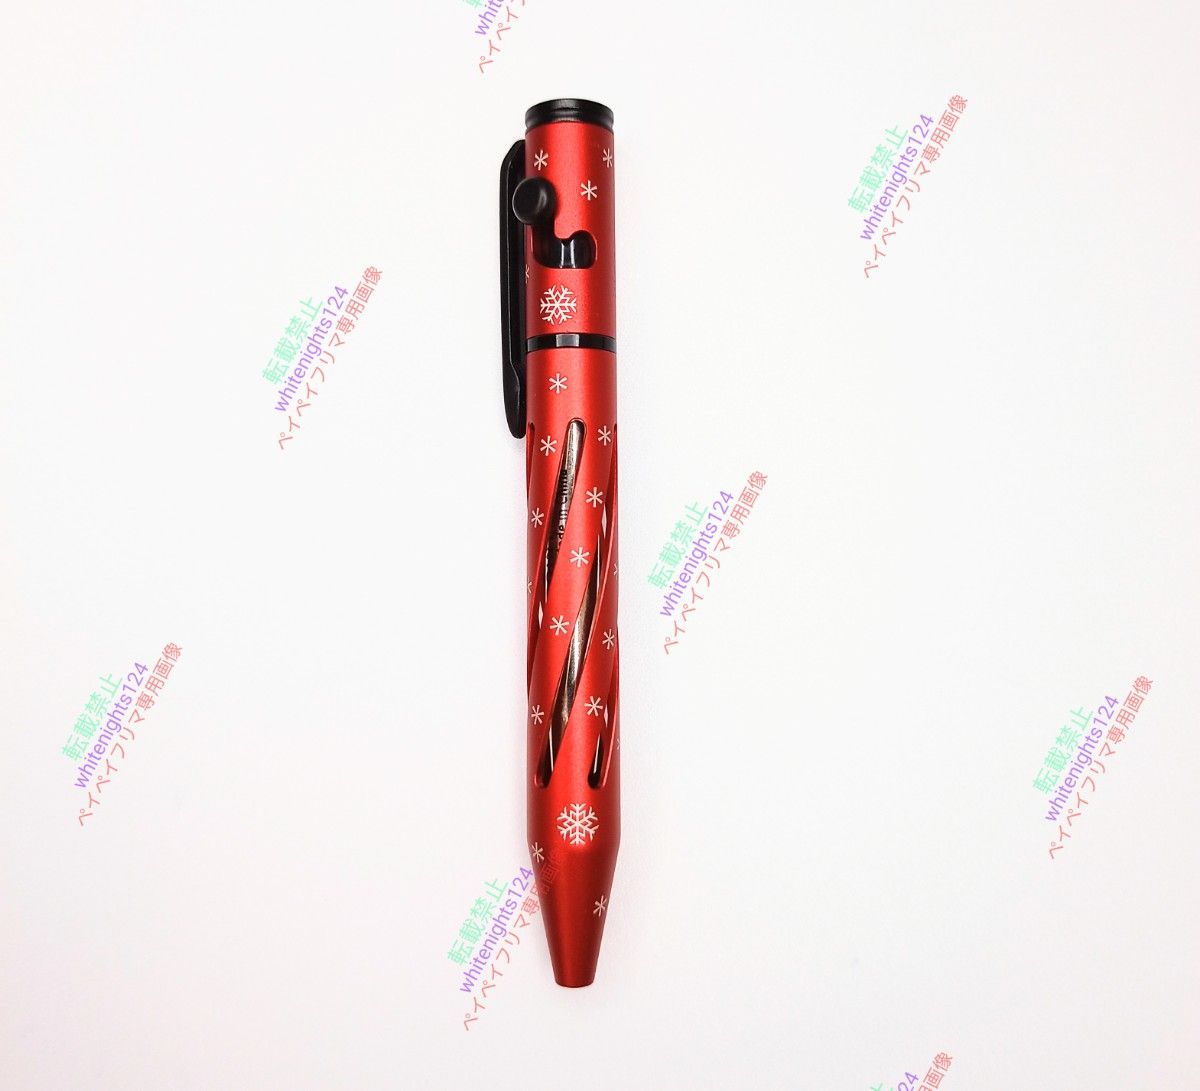 OLIGHT O'Pen Mini ペン レッド 【未使用品】オーライト スノーフレーク レーザー刻印入り